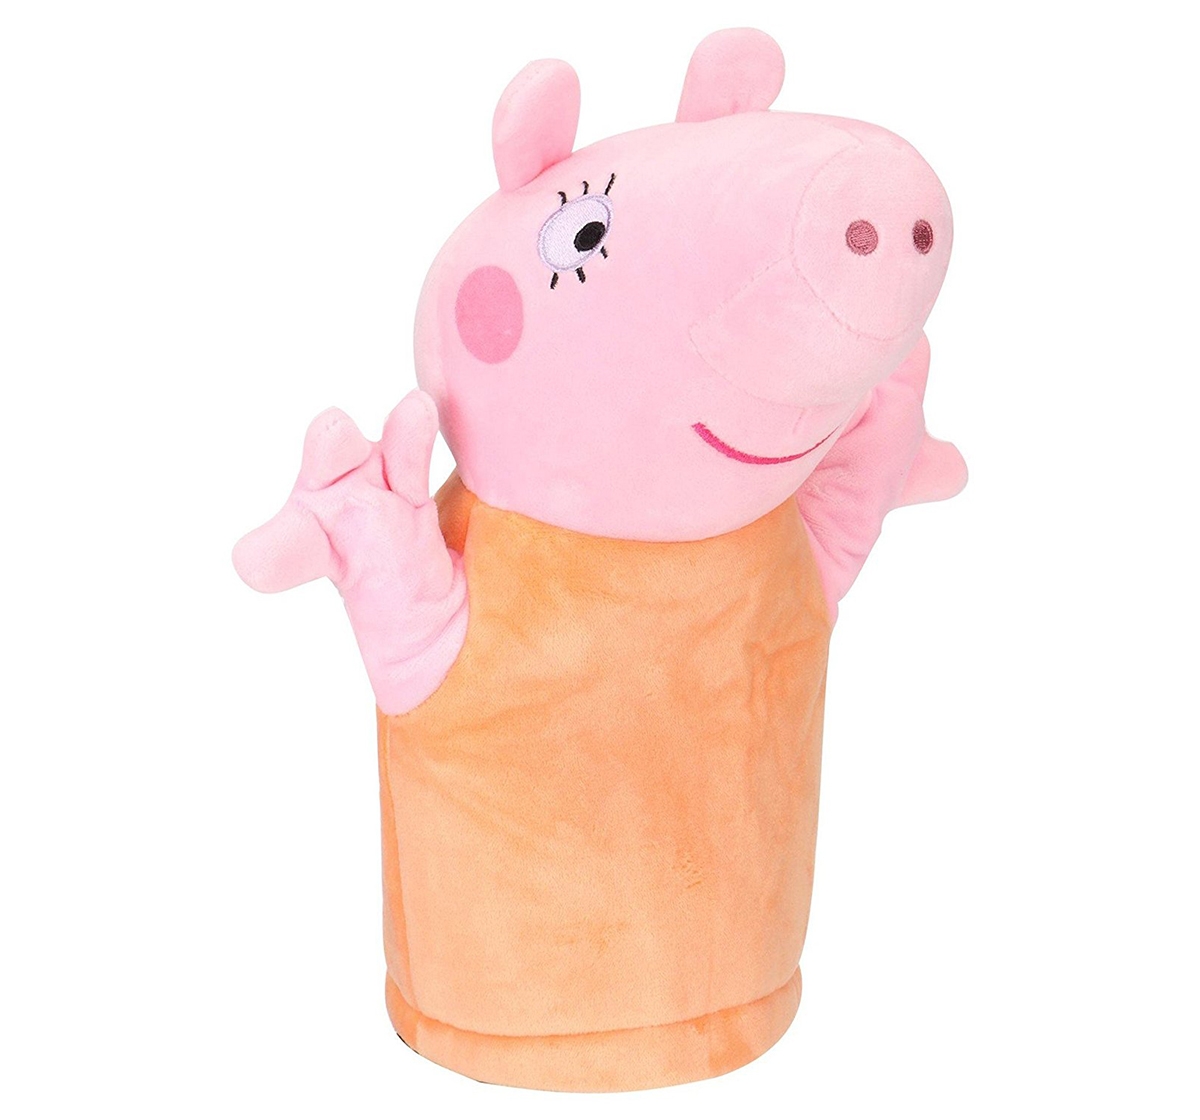 Peppa Pig | Peppa Pig Mummy 26 Cm Soft Toy for Kids age 3Y+ (Orange) 0